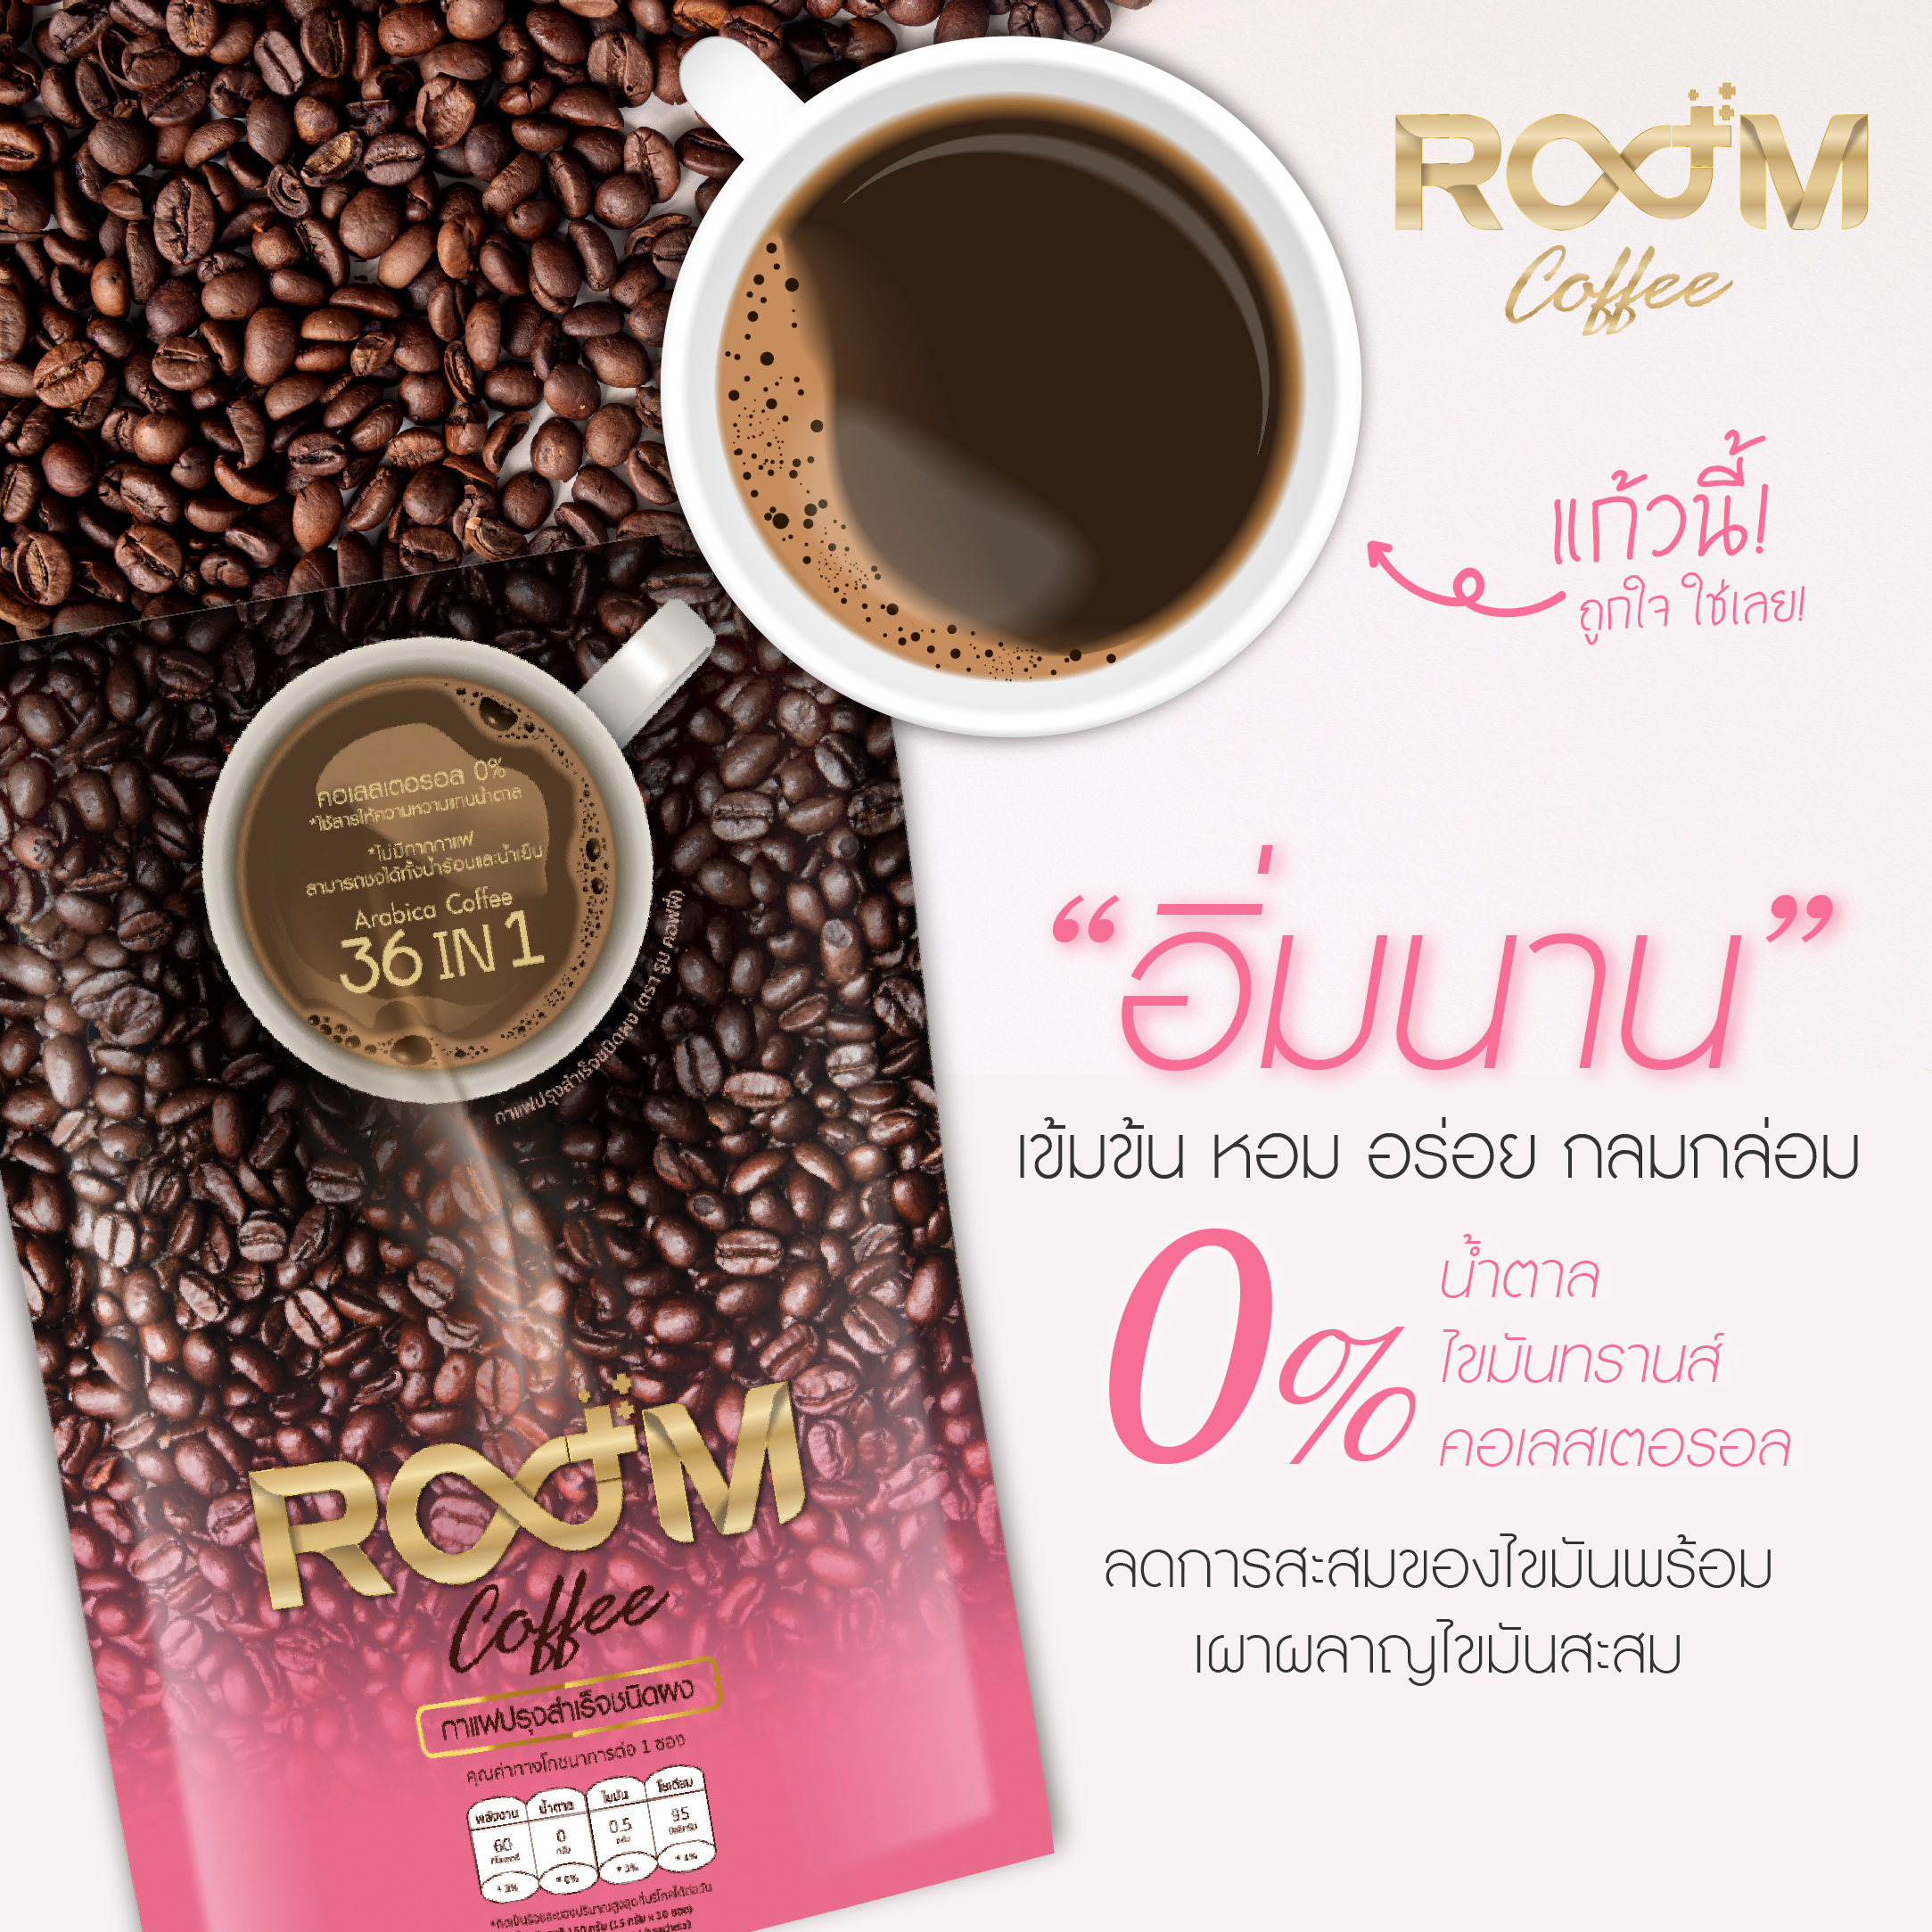 กาแฟบูม Room Coffee Boom Coffee กาแฟเพื่อสุขภาพ ตัวช่วยควบคุมน้ำหนัก ลดพุง กินง่าย อร่อยมากก แท้100%  ราคาพิเศษ 279 บาทเท่านั้น